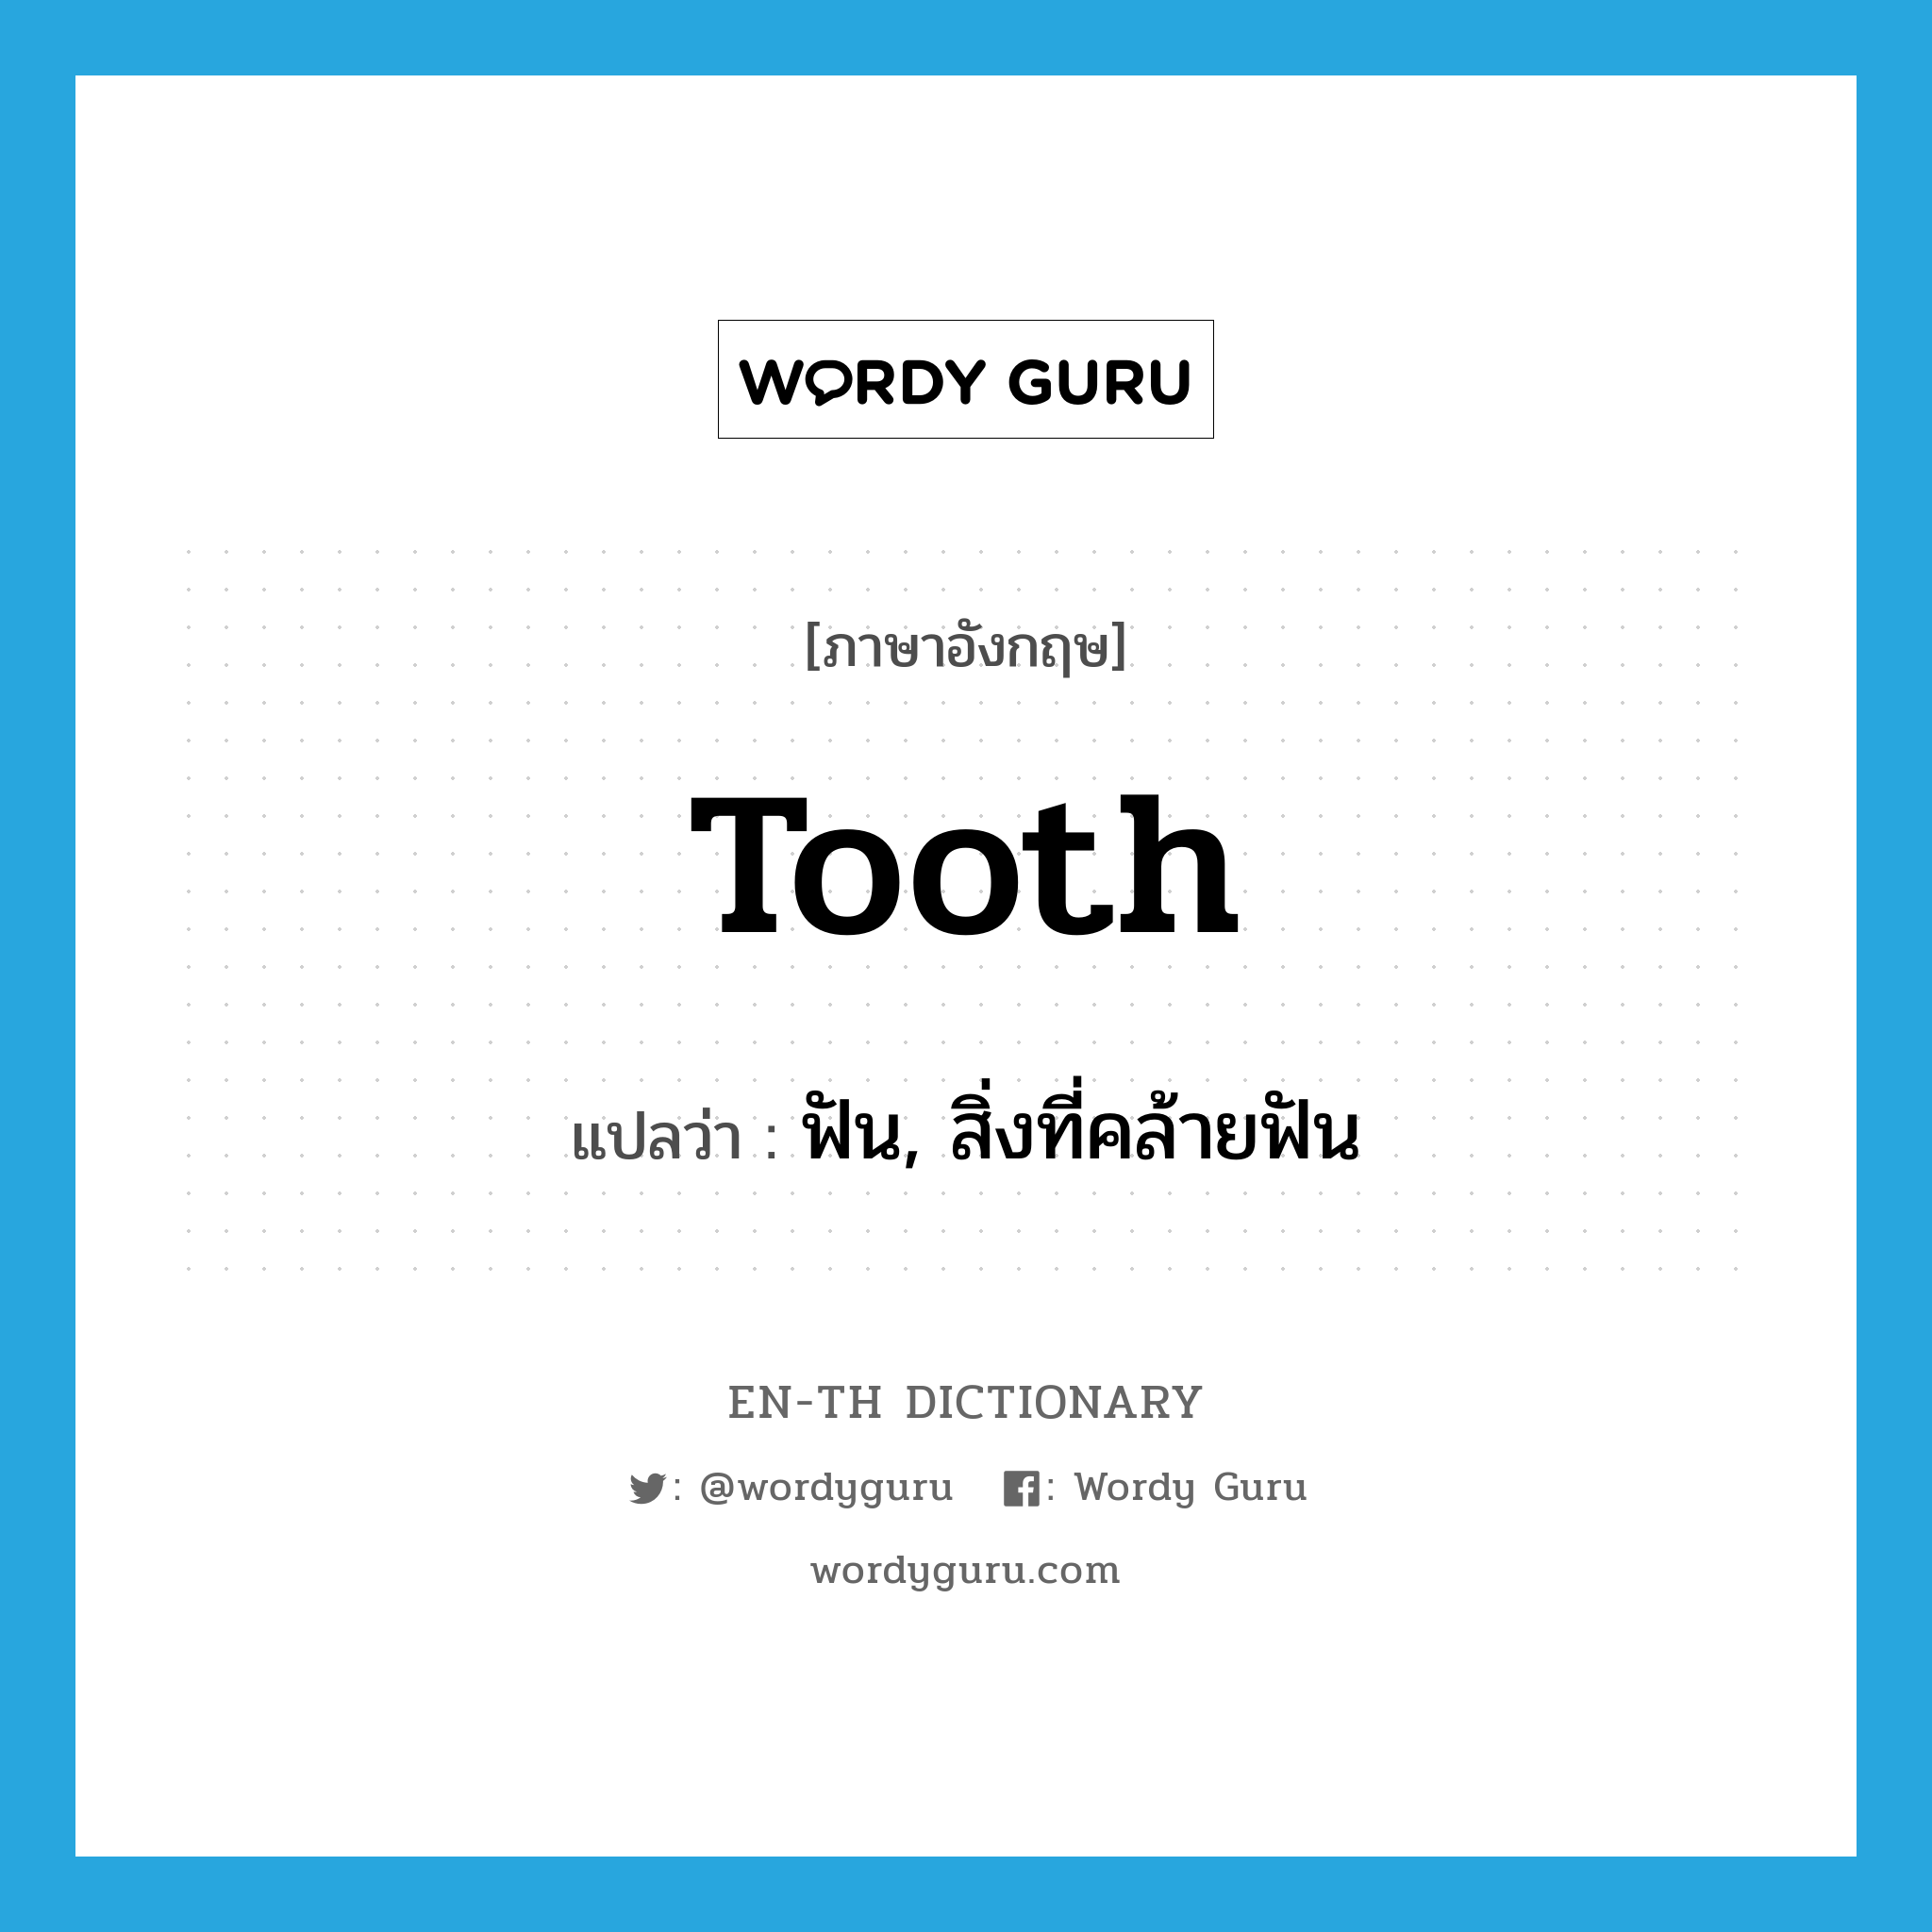 ฟัน, สิ่งที่คล้ายฟัน ภาษาอังกฤษ?, คำศัพท์ภาษาอังกฤษ ฟัน, สิ่งที่คล้ายฟัน แปลว่า tooth ประเภท N หมวด N